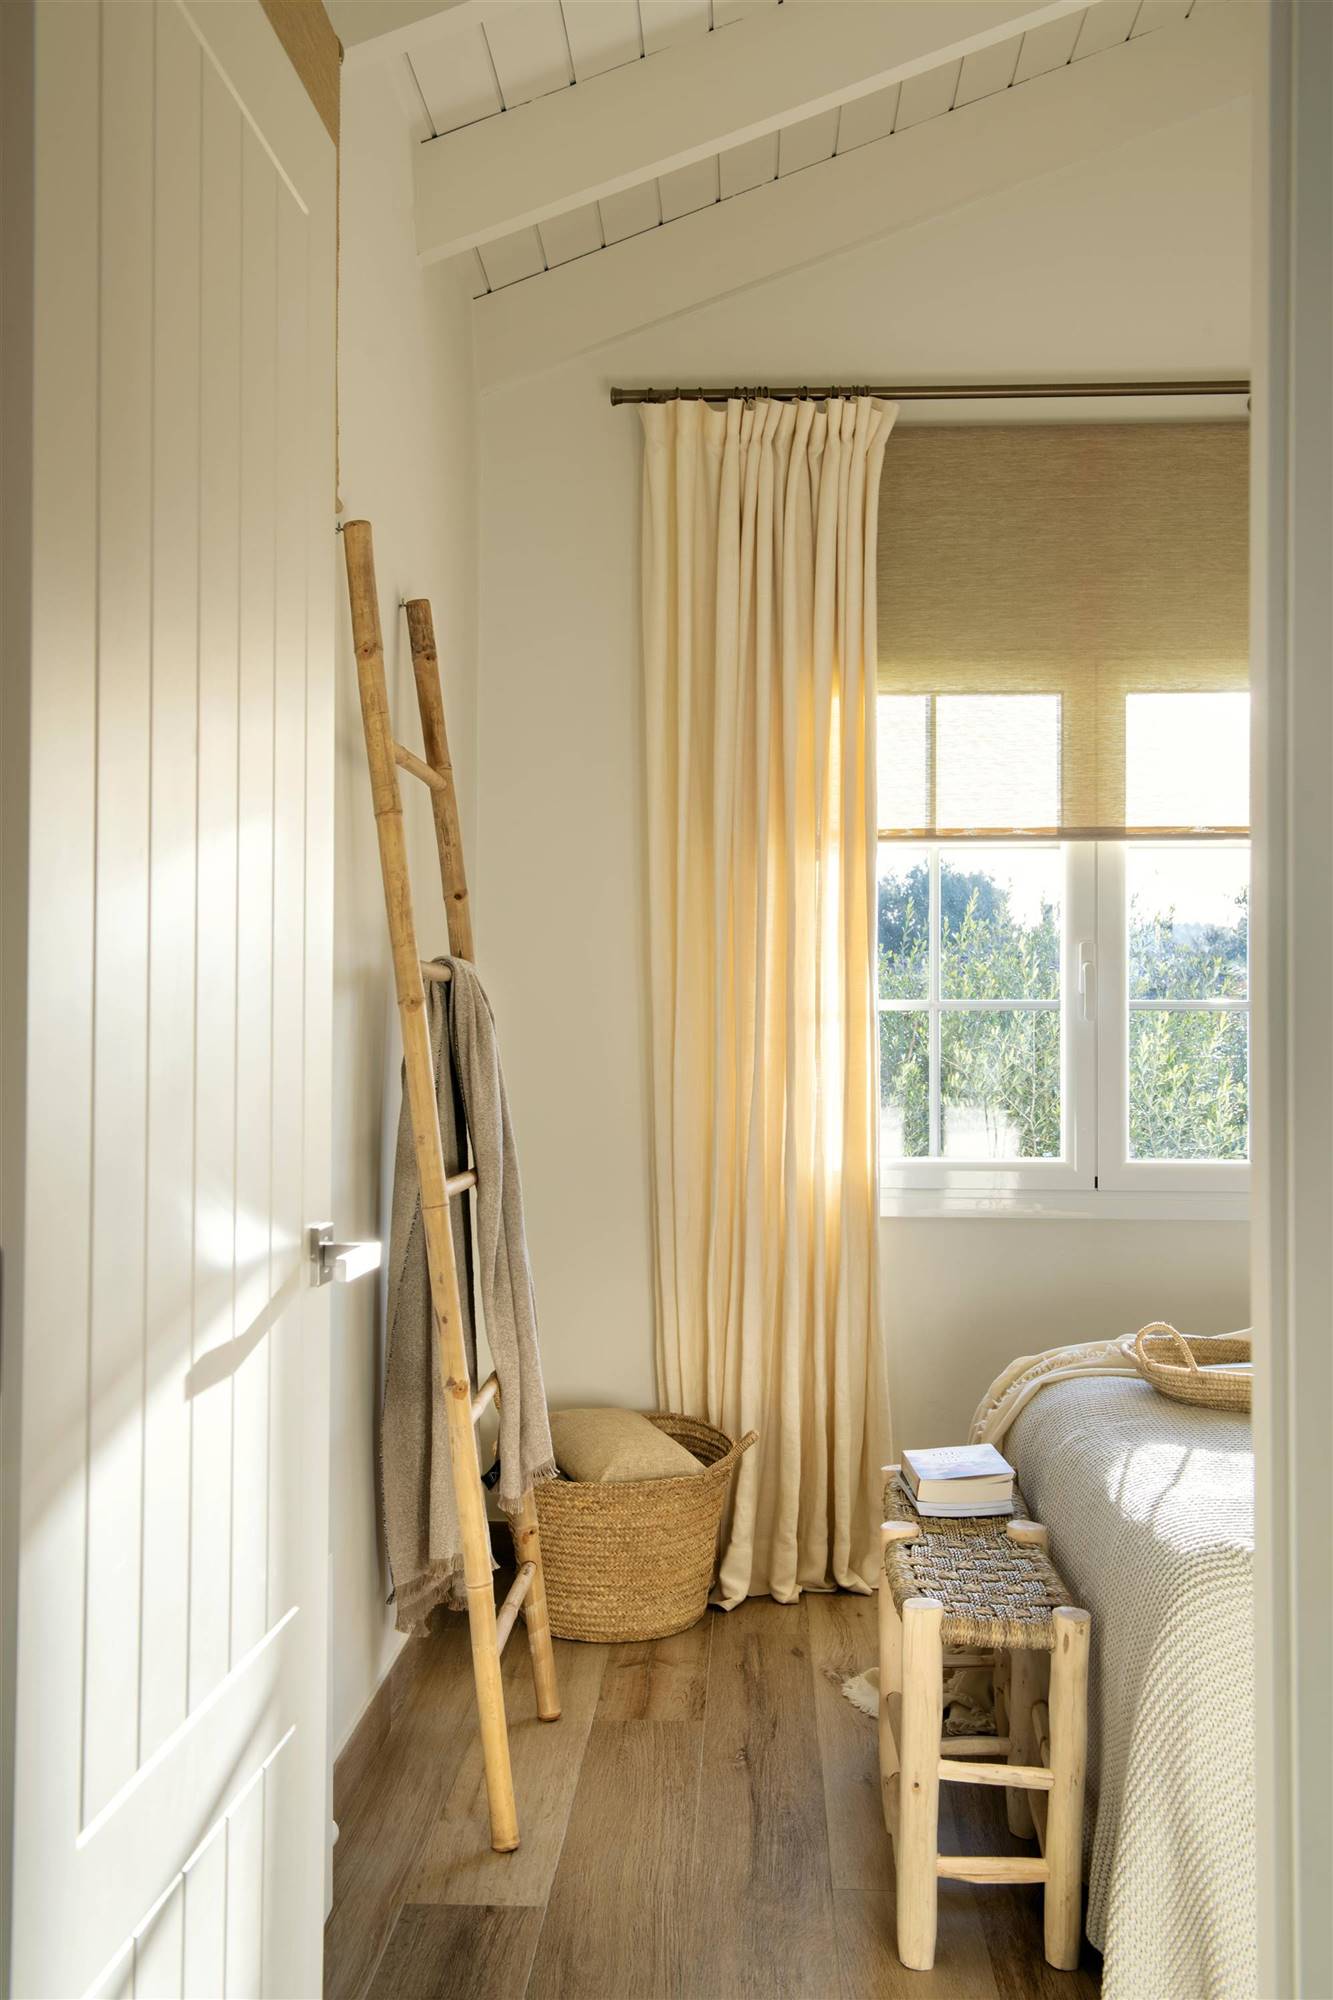 Dormitorio con cortinas livianas en colores claros y escalera decorativa en pared.